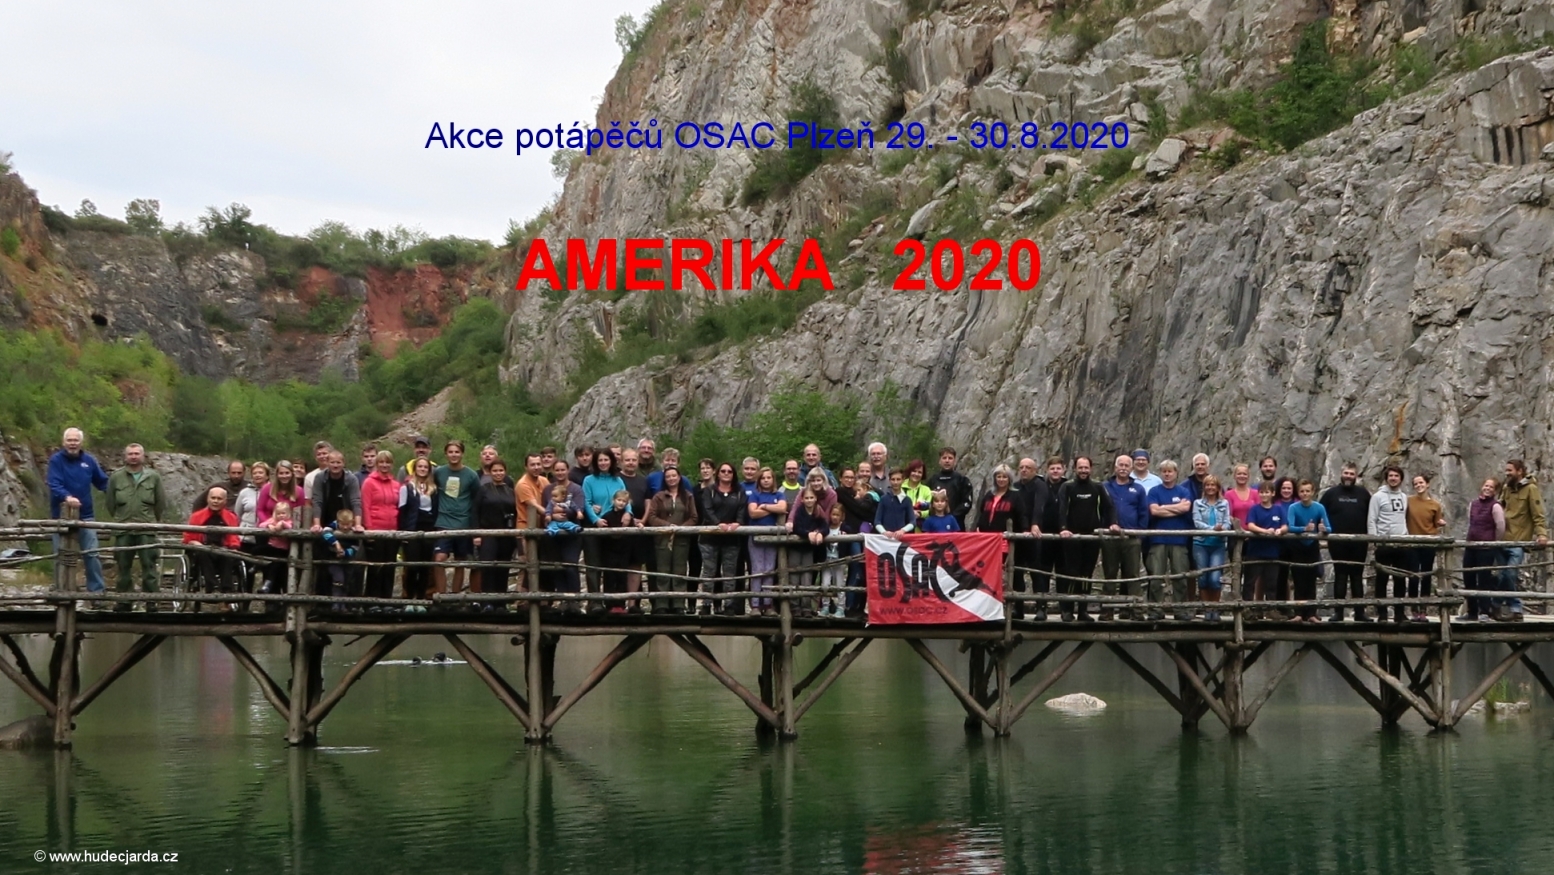 Přečtete si více ze článku Super akce potápěčů OSAC:   AMERIKA 29. – 30.8.2020